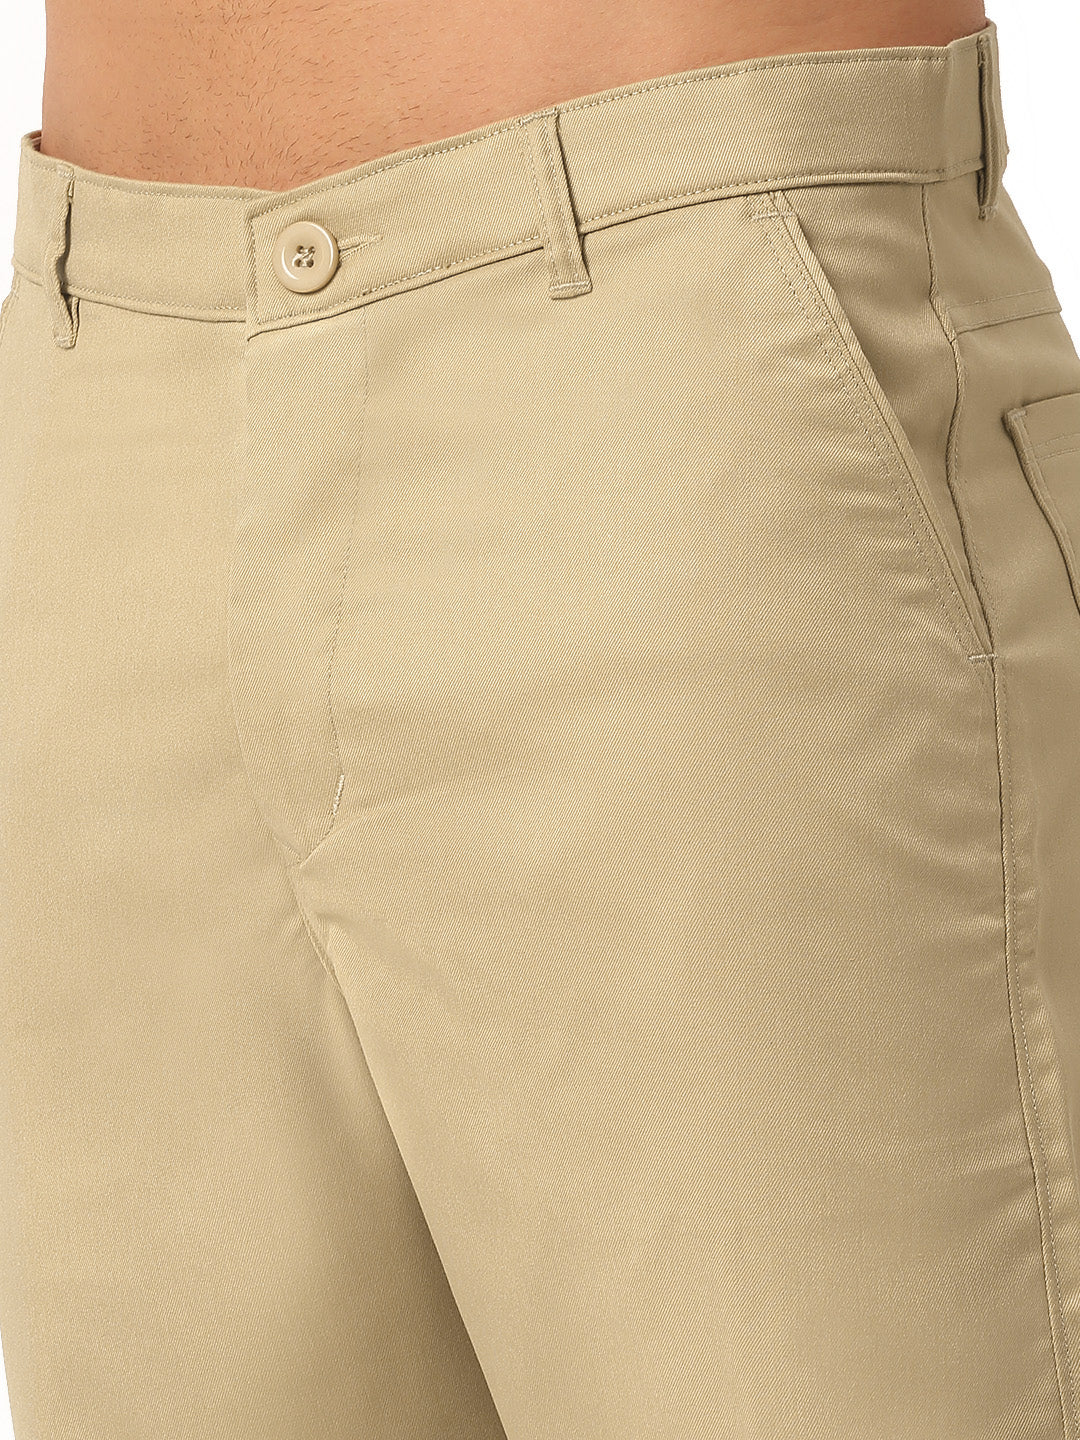 Jainish Men's Casual Cotton Solid Shorts ( SGP 153 Beige )